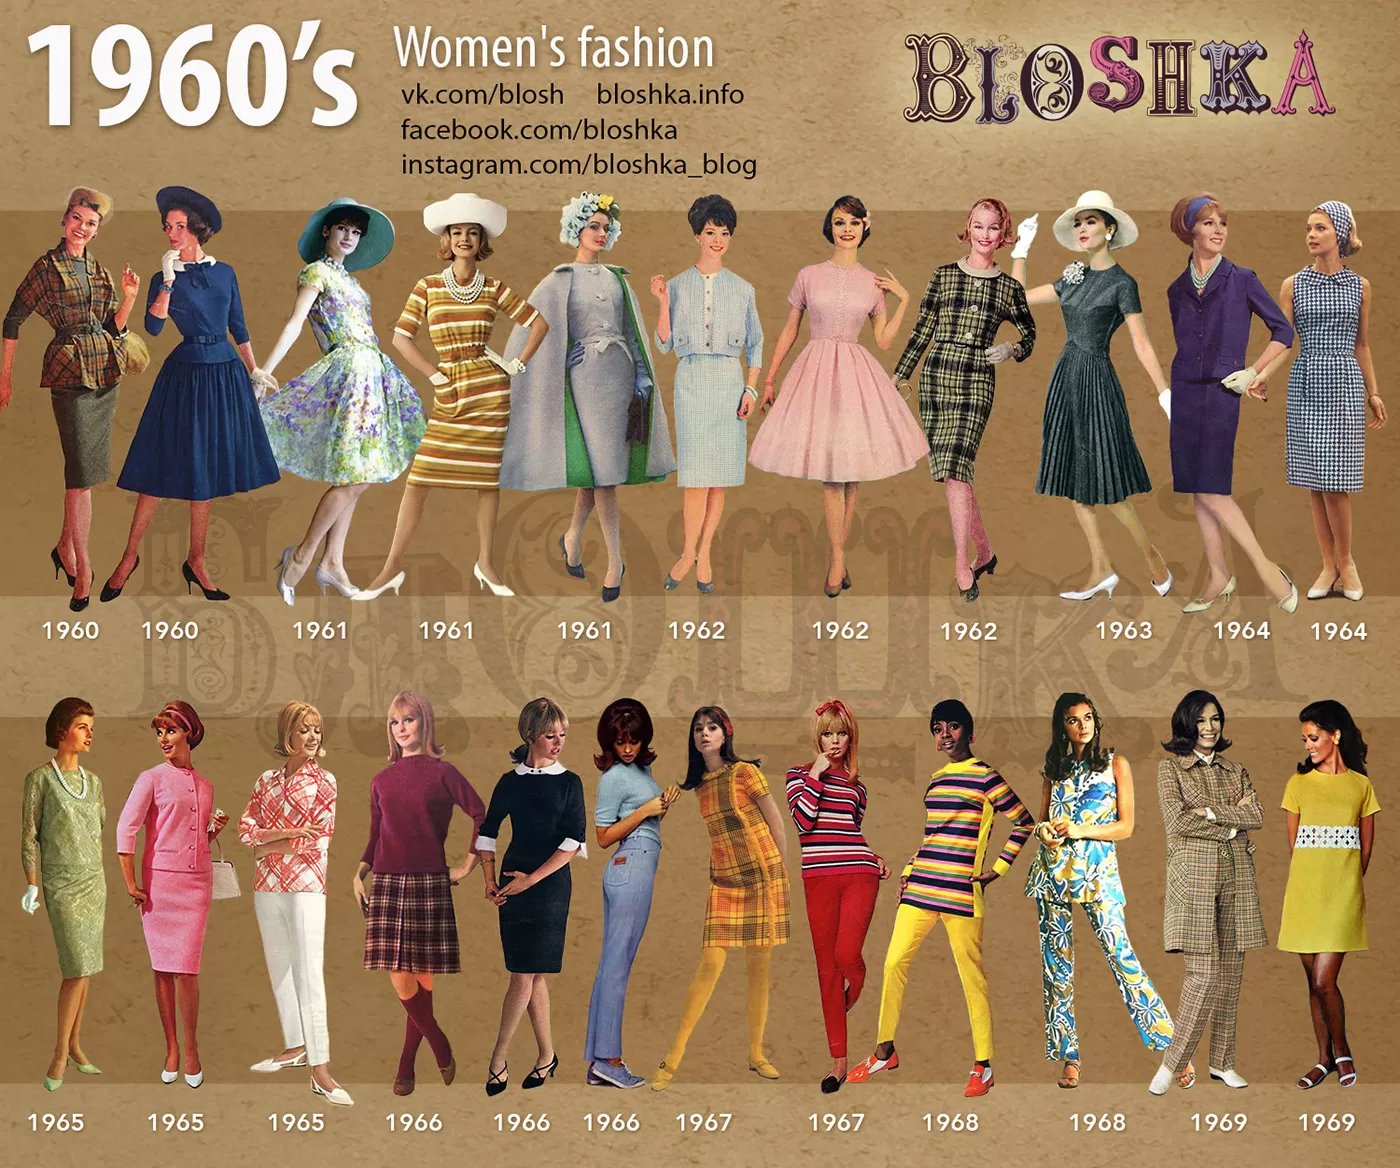 Seperti Daur Ulang, Perkembangan Fashion di Masyarakat dari Tahun 1950